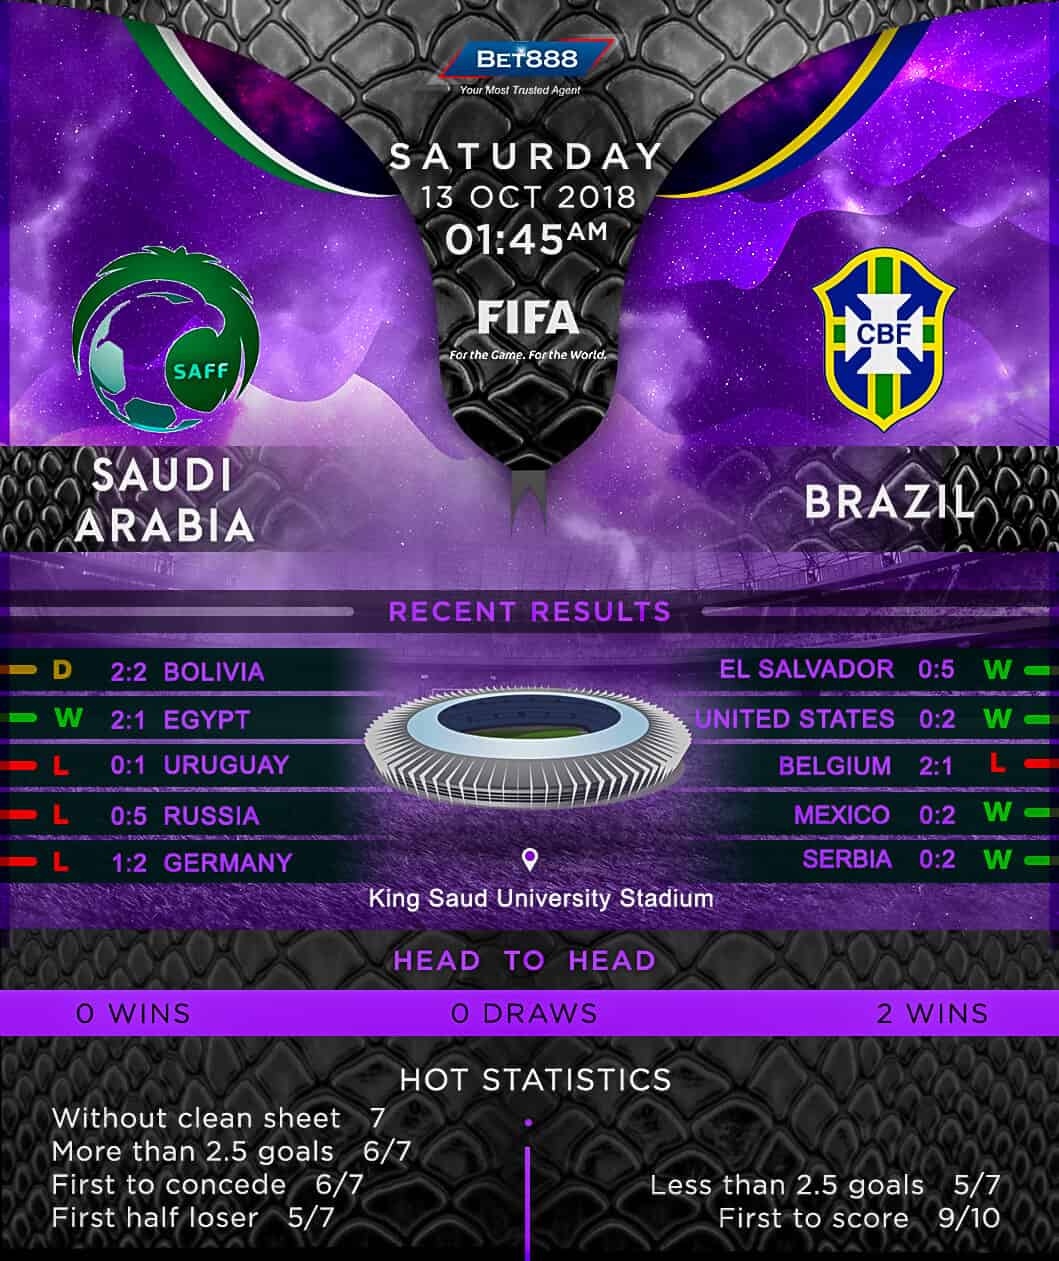 Saudi Arabia vs Brazil 13/10/18